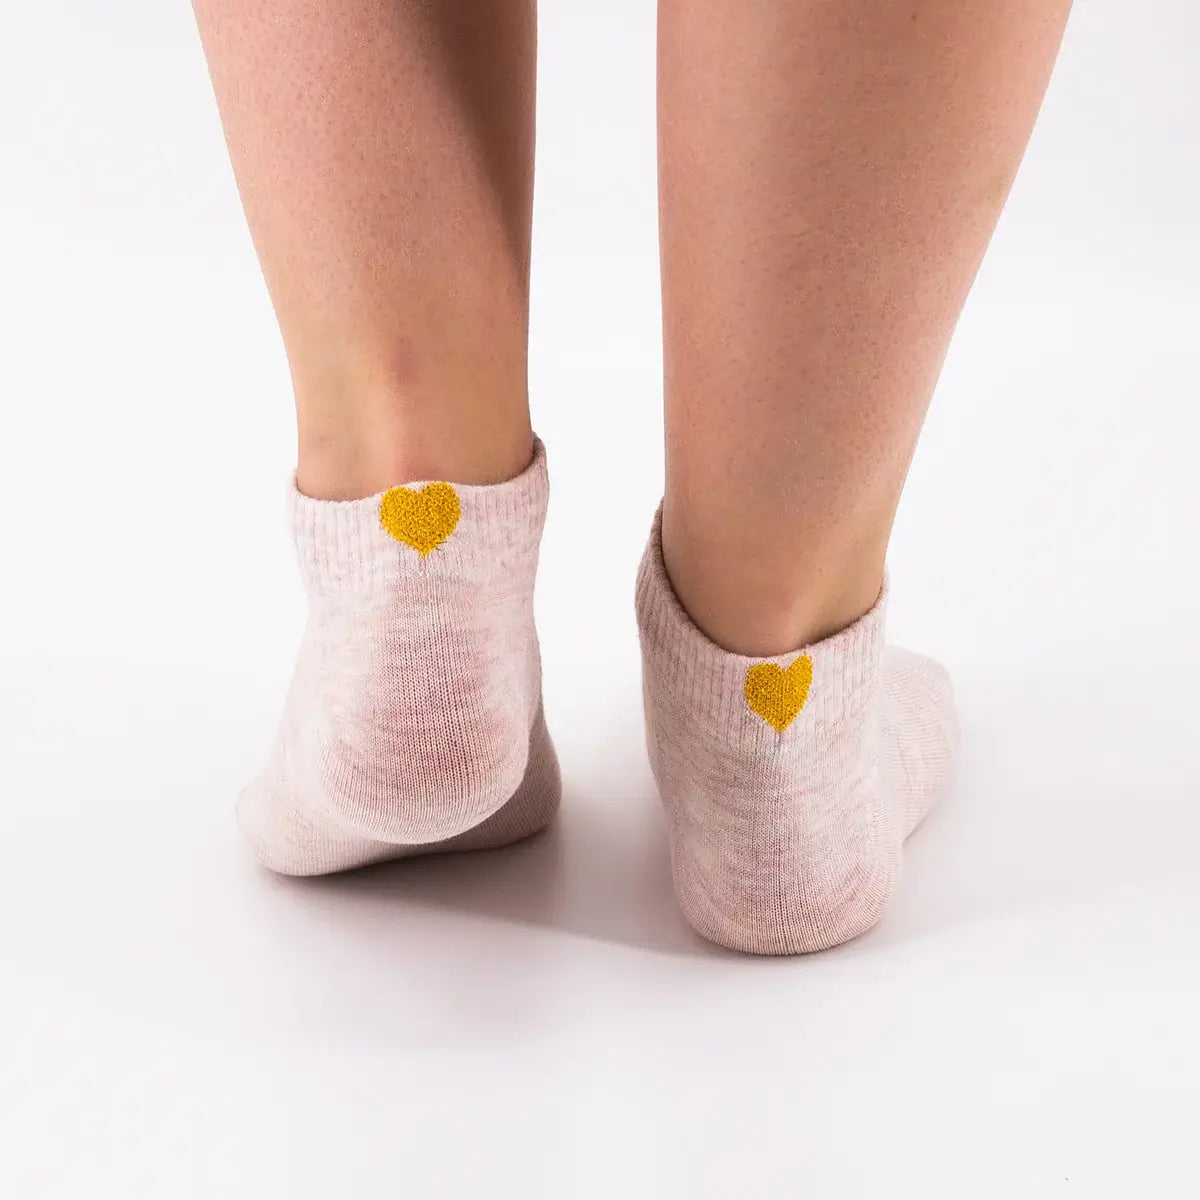 Socquettes roses adultes en coton avec un cœur doré sur l'arrière de la chaussette | Chaussettes douces et respirantes | Un excellent choix pour les adultes qui aiment les cœurs et le doré |